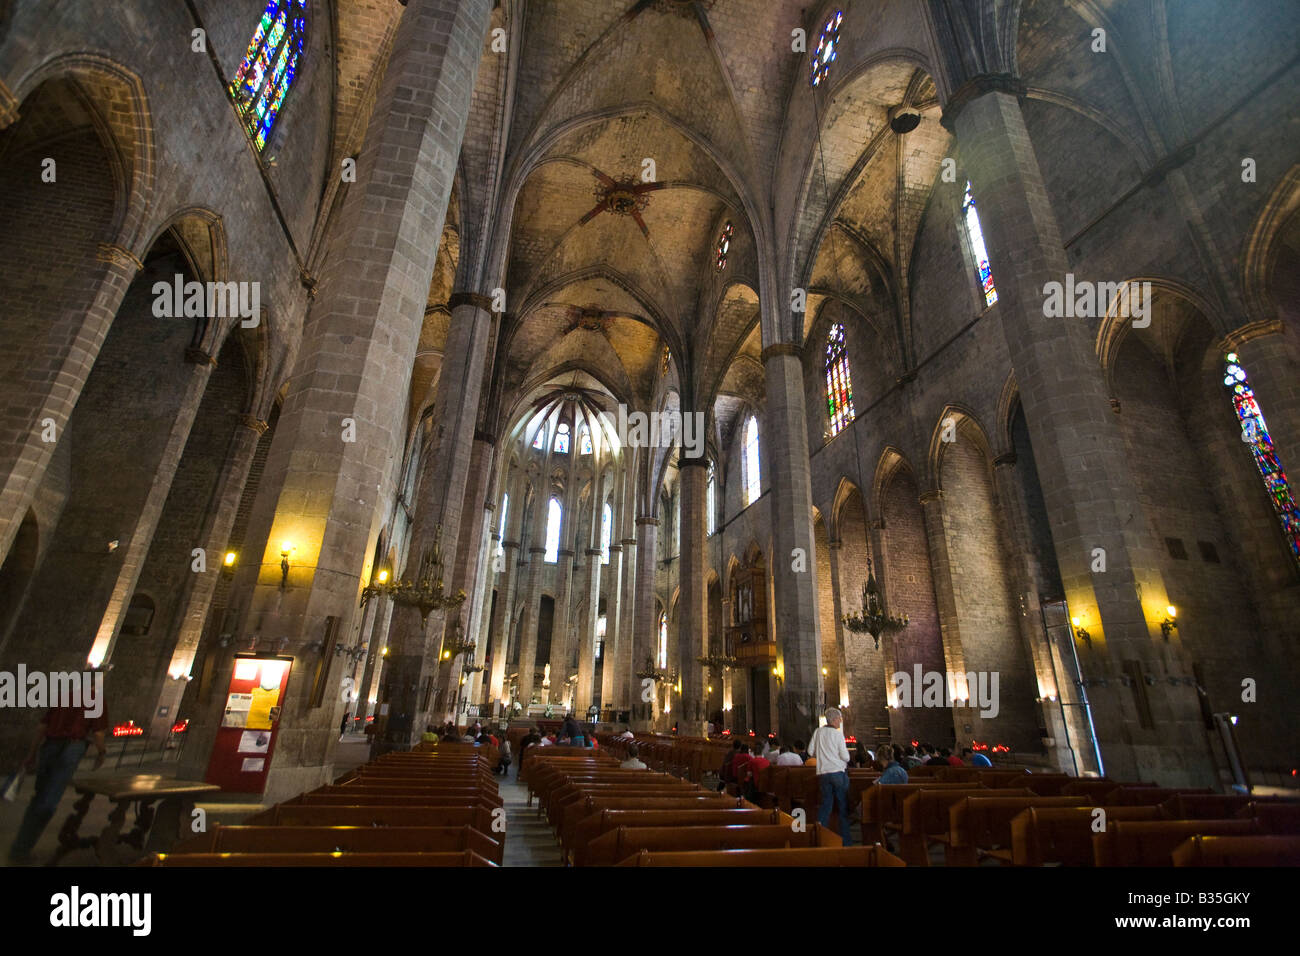 España Barcelona visitantes de estilo gótico catalán arquitectura interior de la Iglesia de Santa Maria del Mar en el distrito de la Ribera Foto de stock